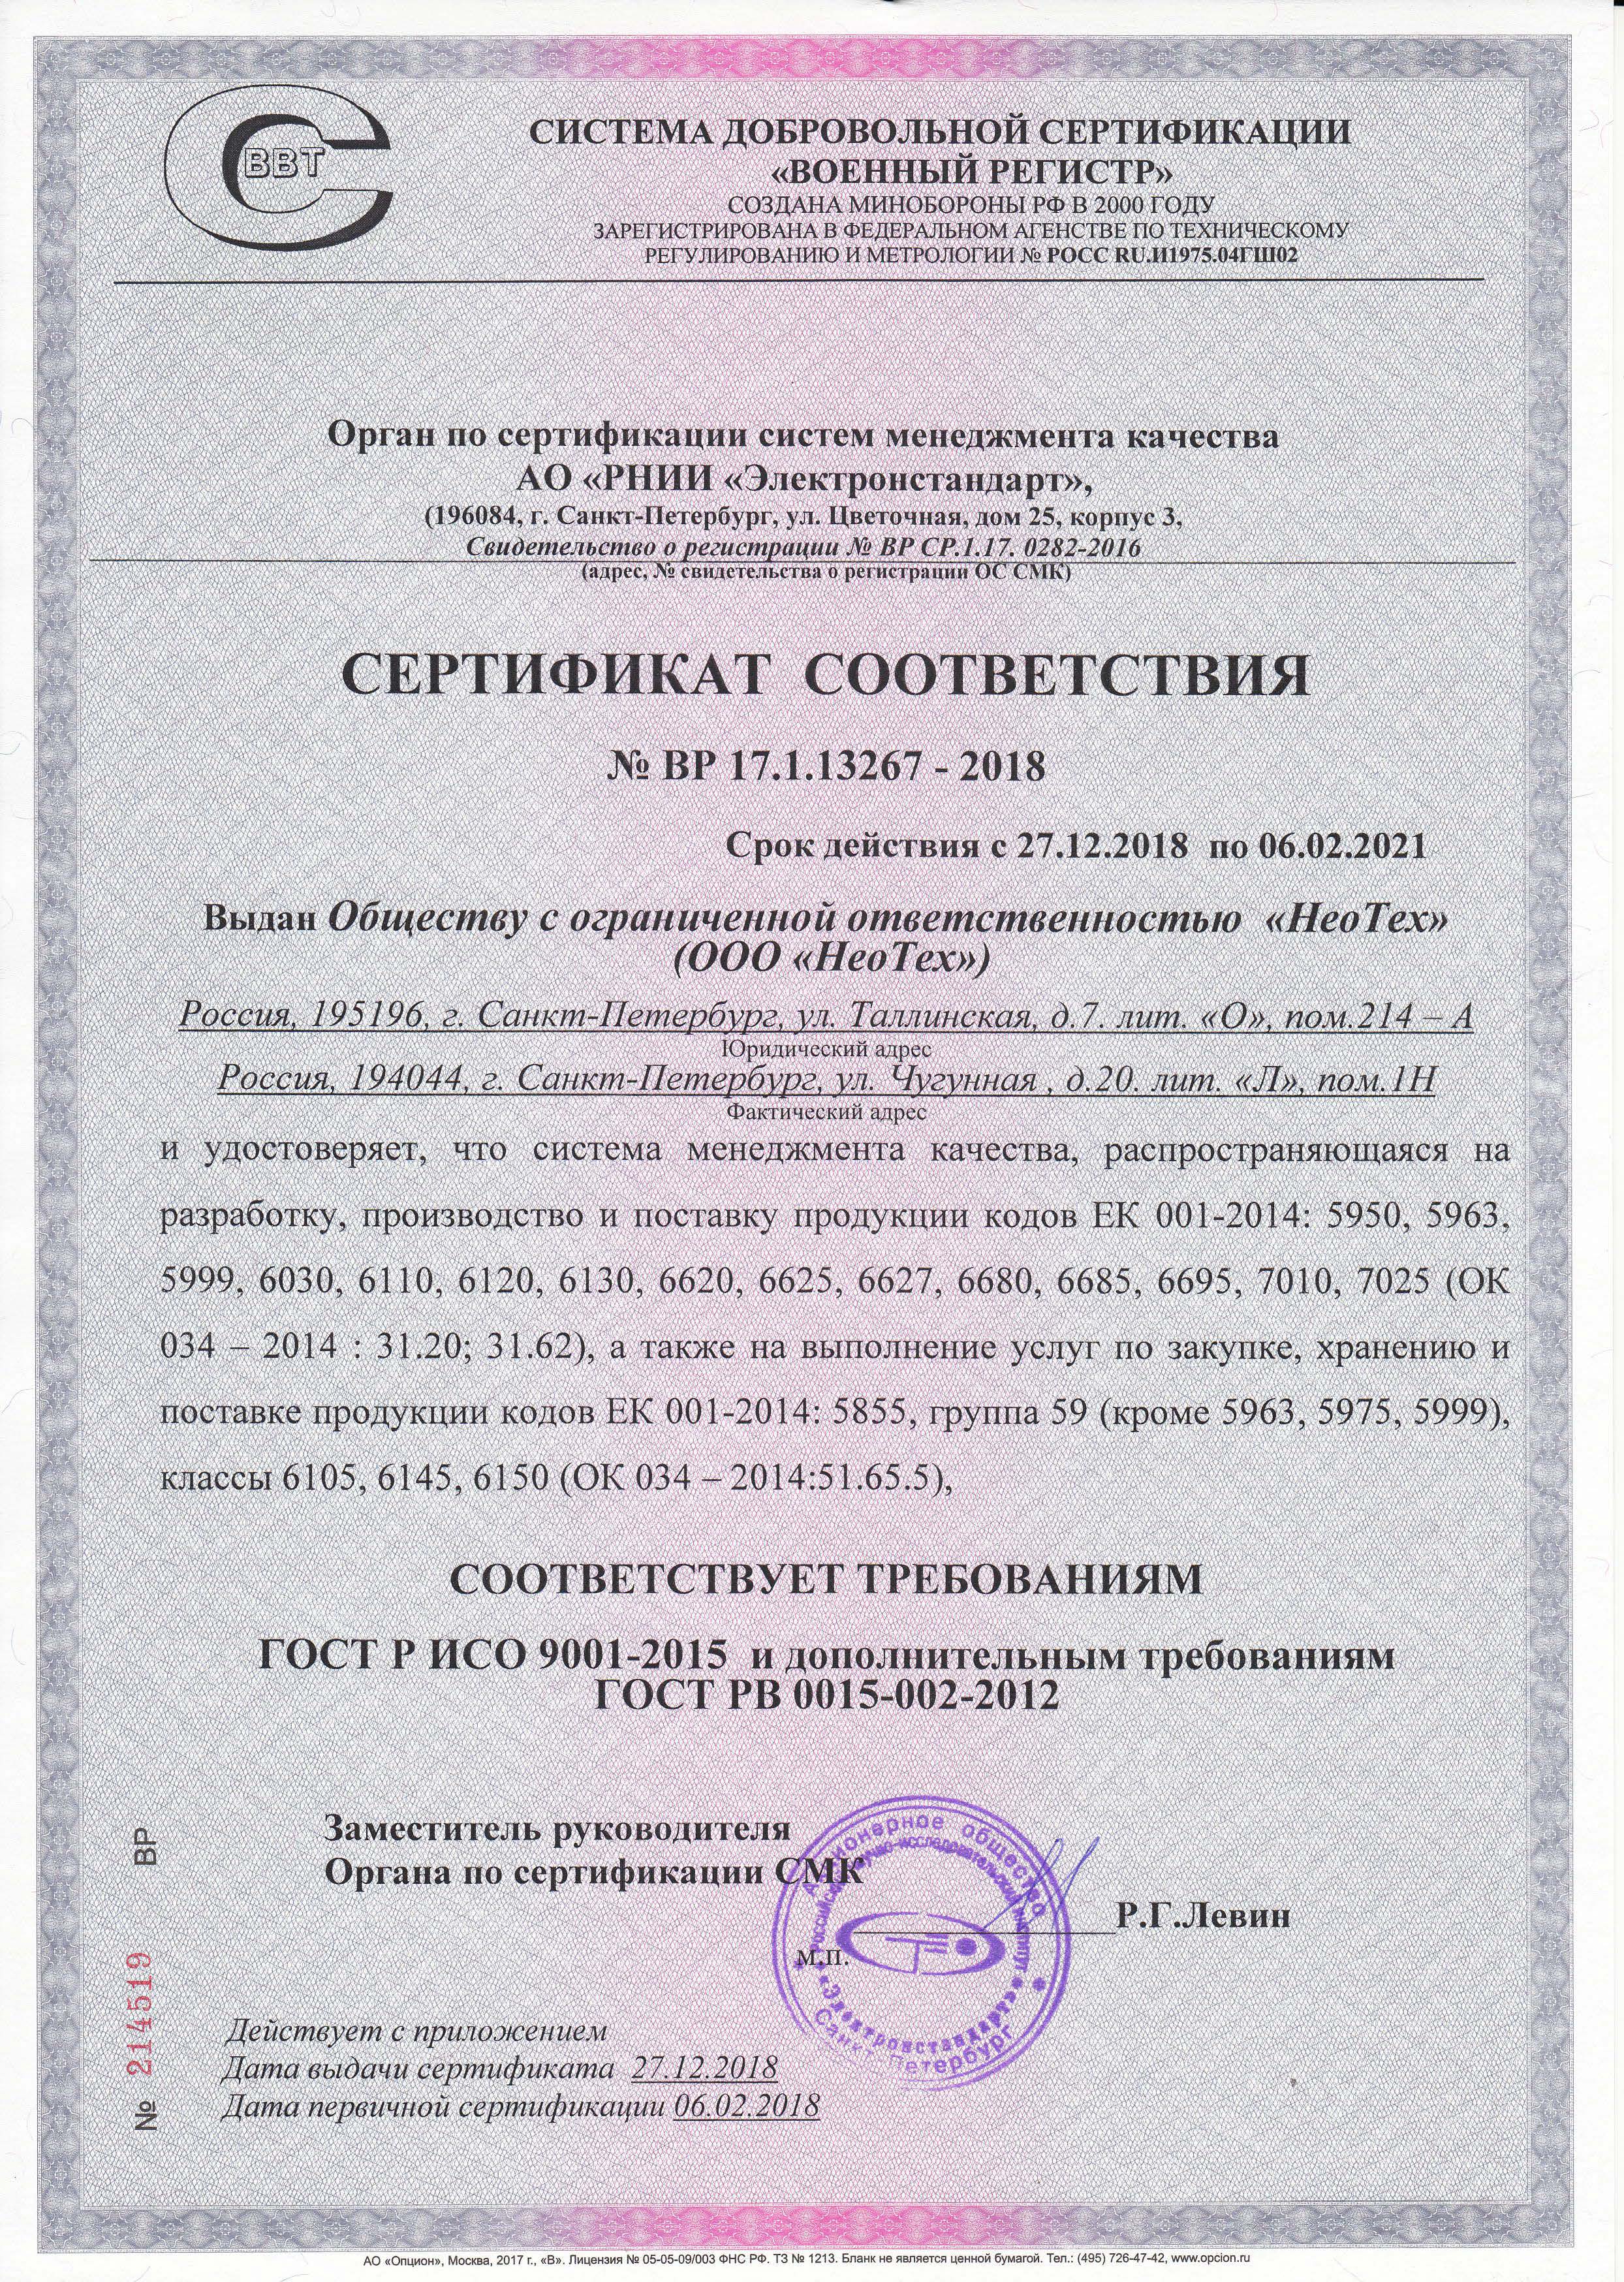 Сертификат соответствия № ВР 17.1.13267